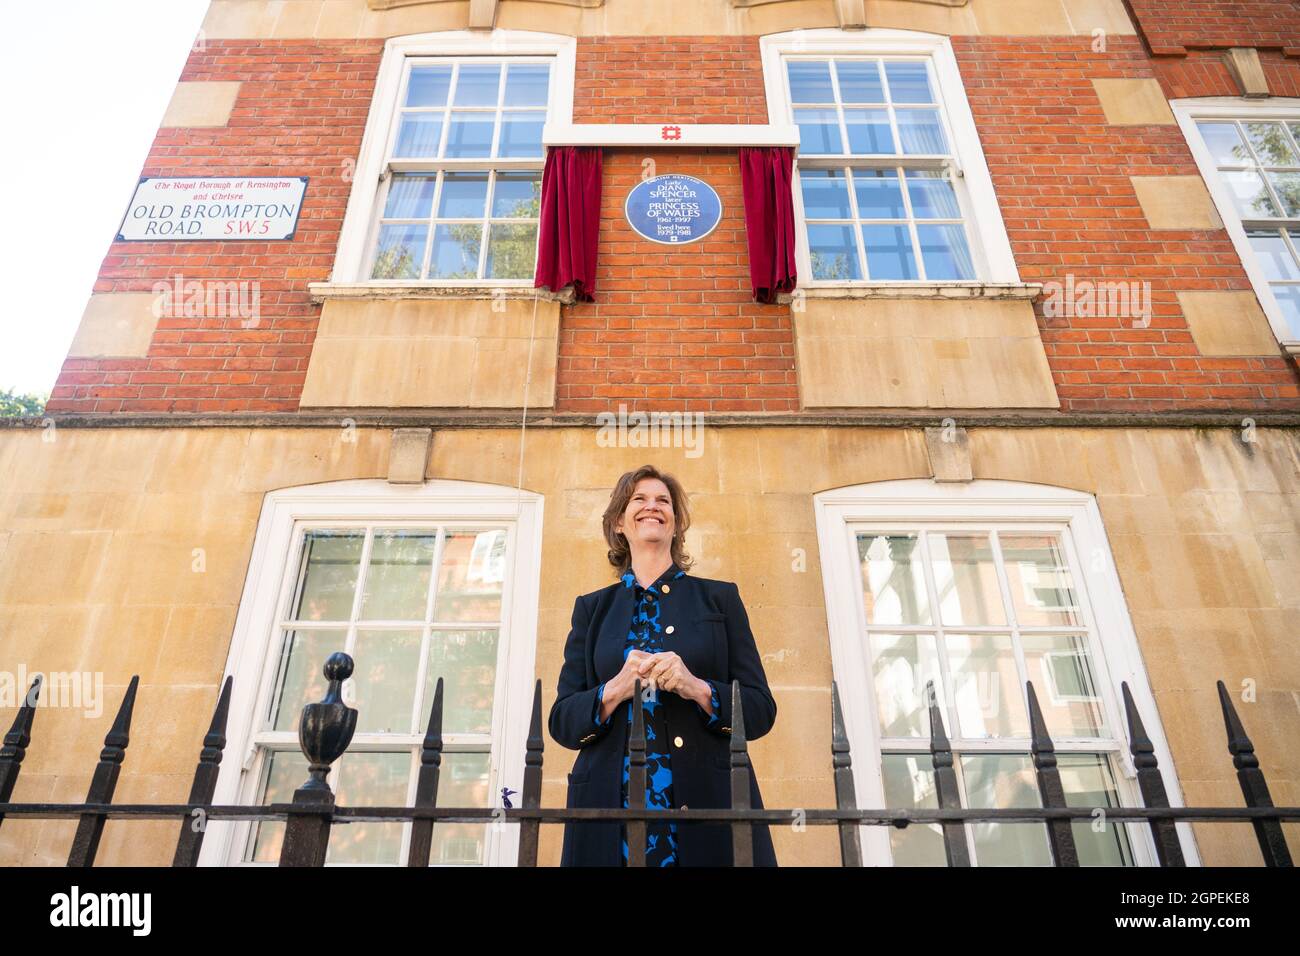 Virginia Clarke, ancienne platte de la princesse Diana, a présenté une plaque bleue du patrimoine anglais à Diana, princesse du pays de Galles, devant la cour de Coleherne, Old Brompton Road, Londres. Date de la photo: Mercredi 29 septembre 2021. Banque D'Images